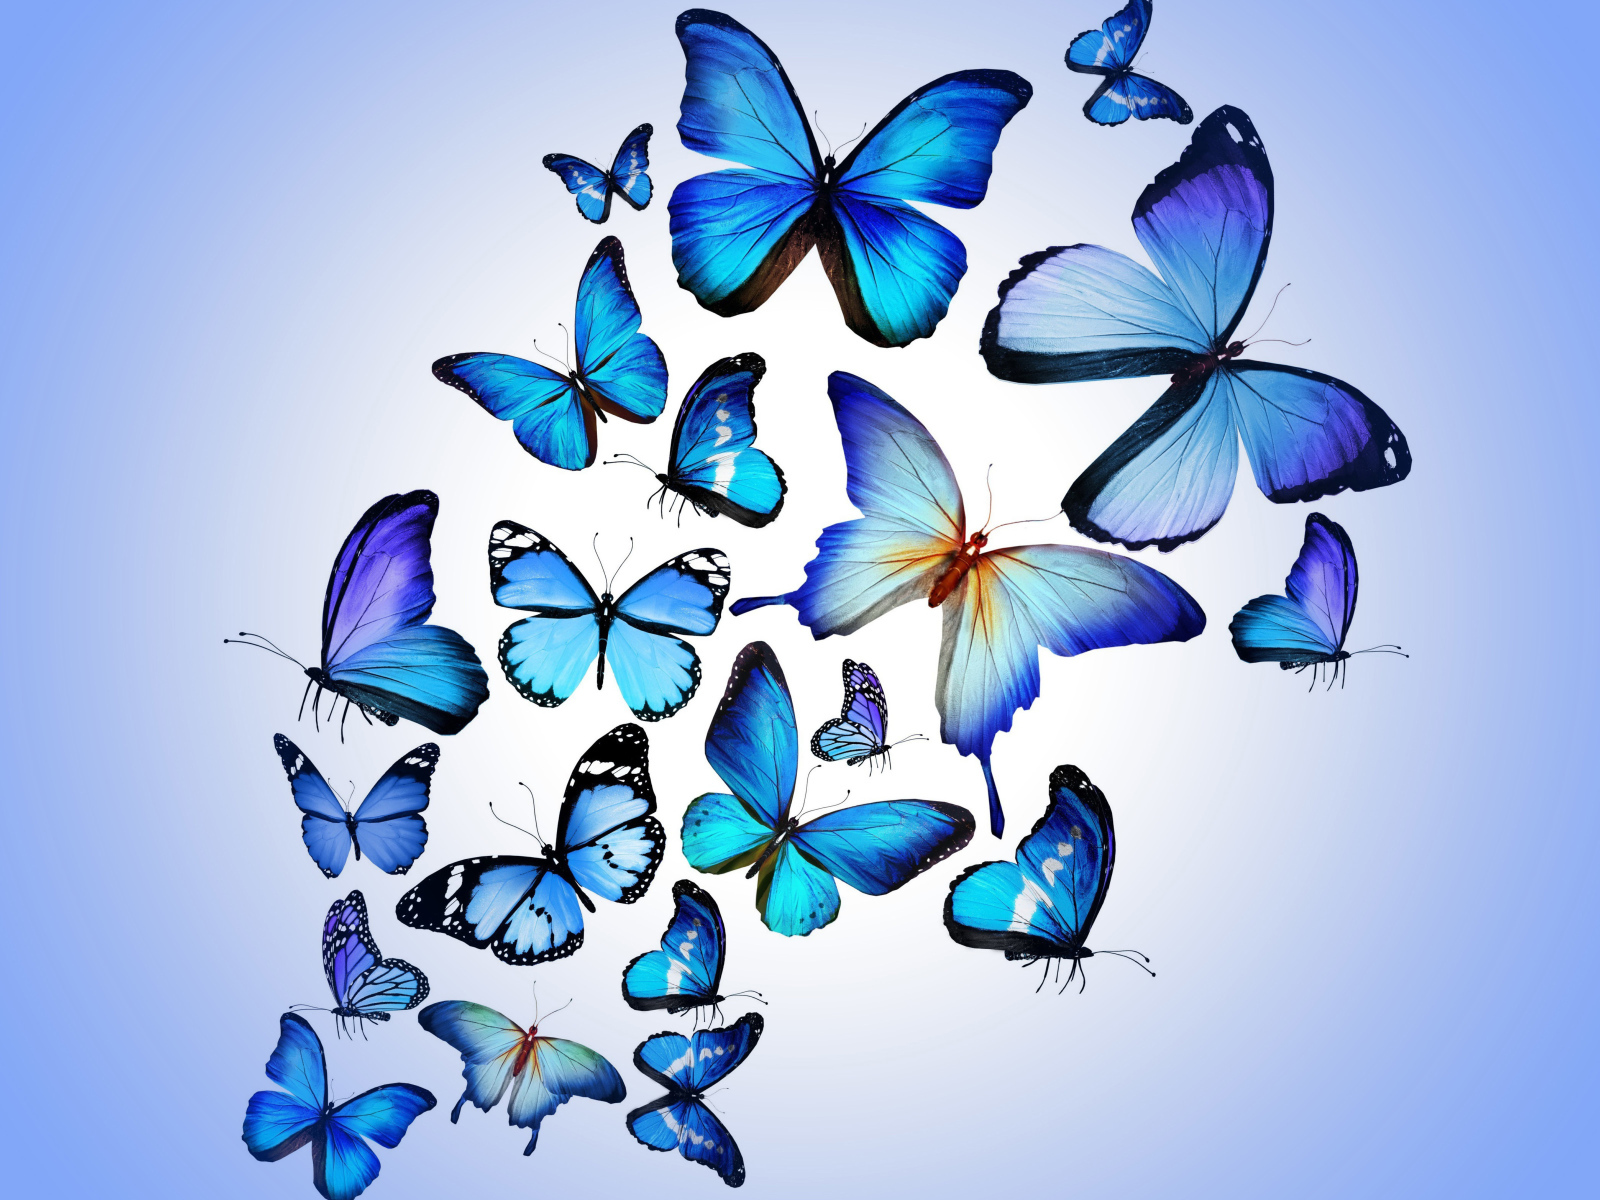 Много синих бабочек на голубом фоне